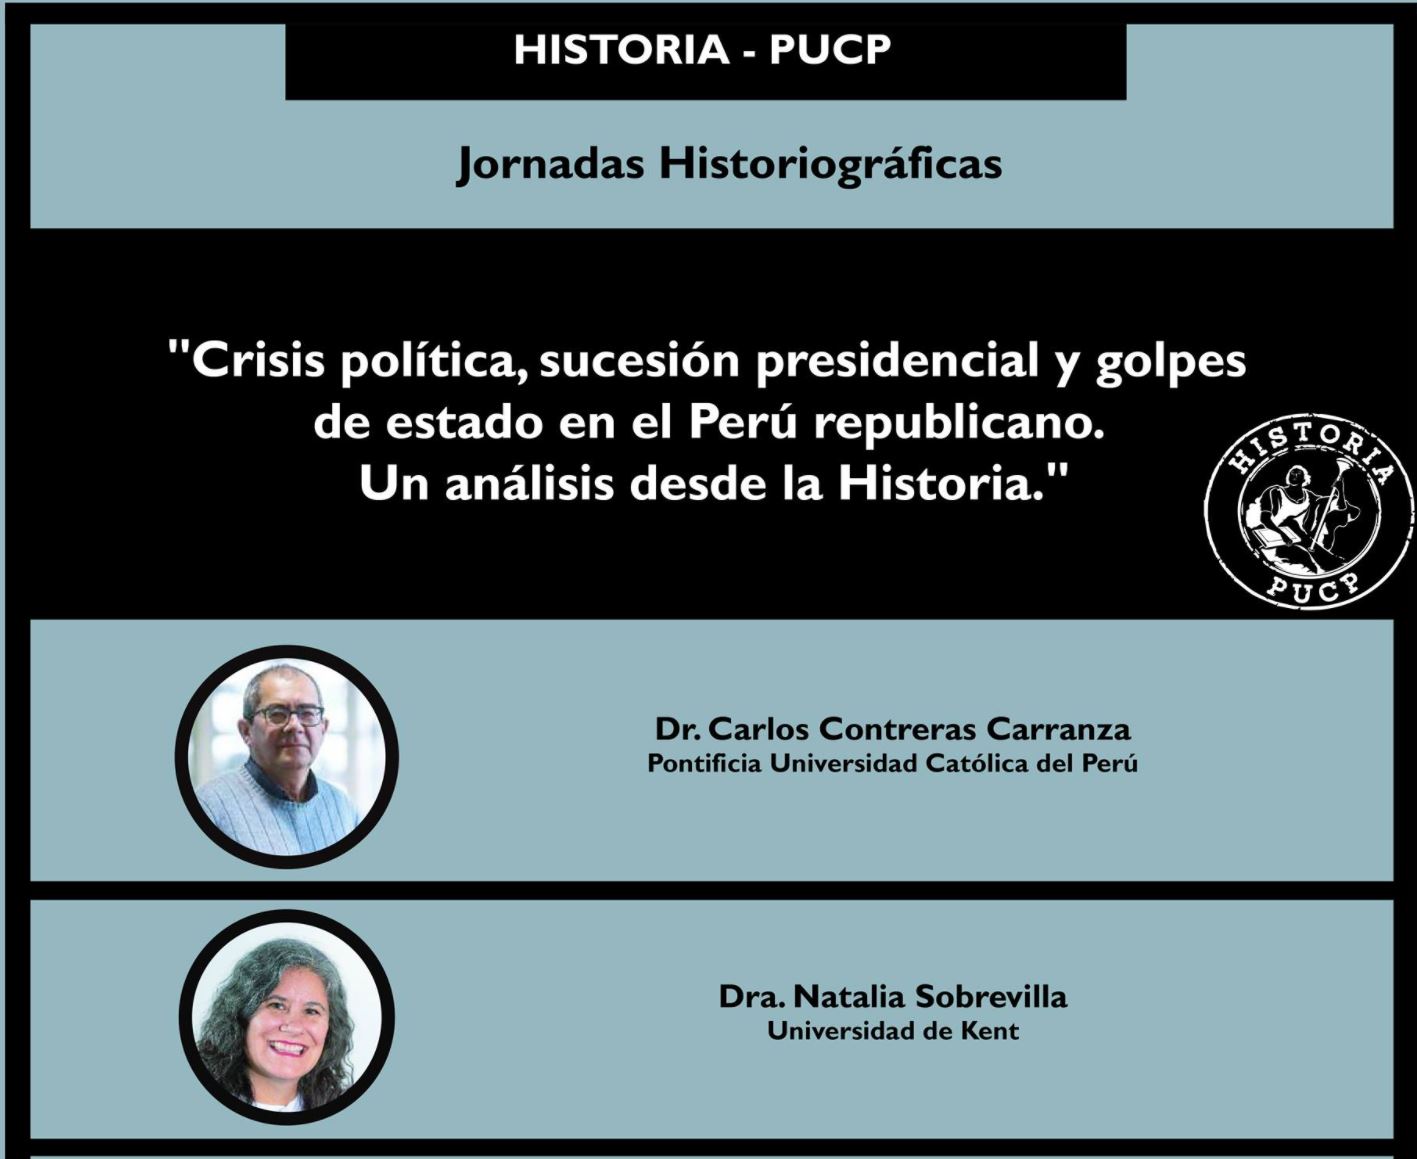 Jornadas Historiográficas: “Crisis política, sucesión presidencial y golpes de estado en el Perú republicano. Un análisis desde la Historia” [video]